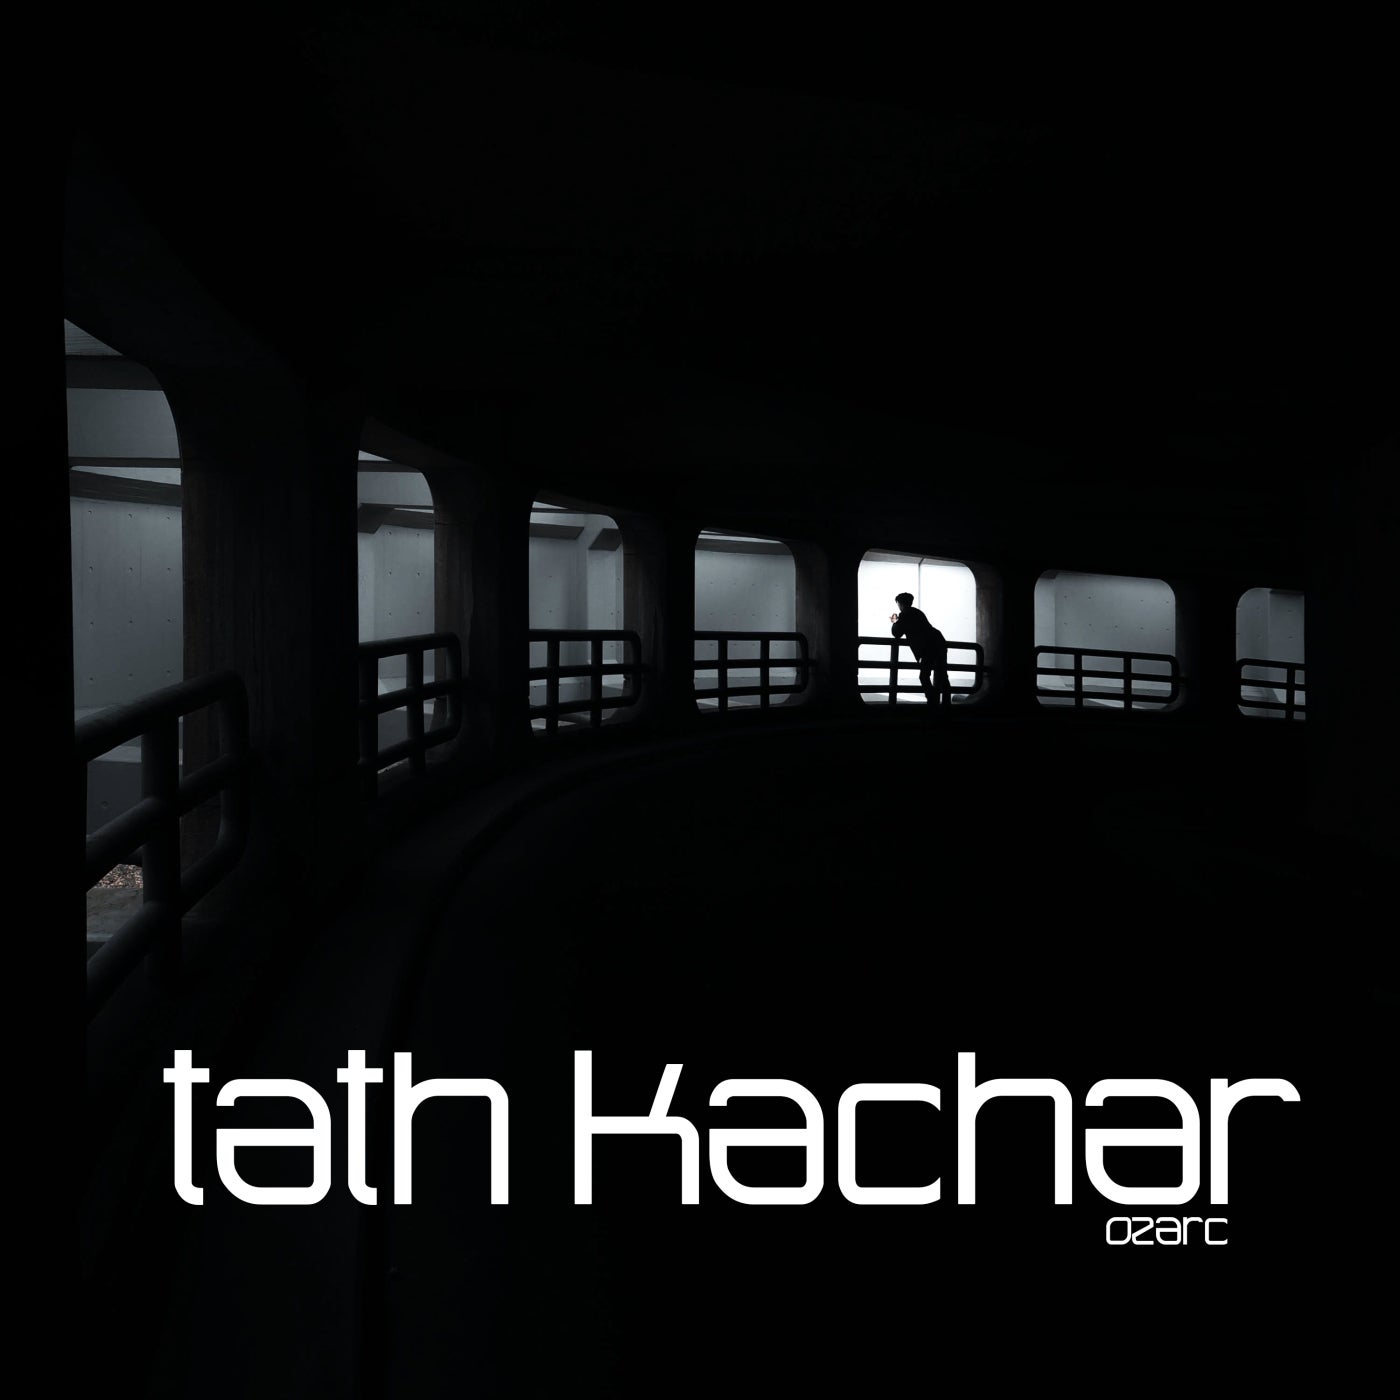 Tath Kachar